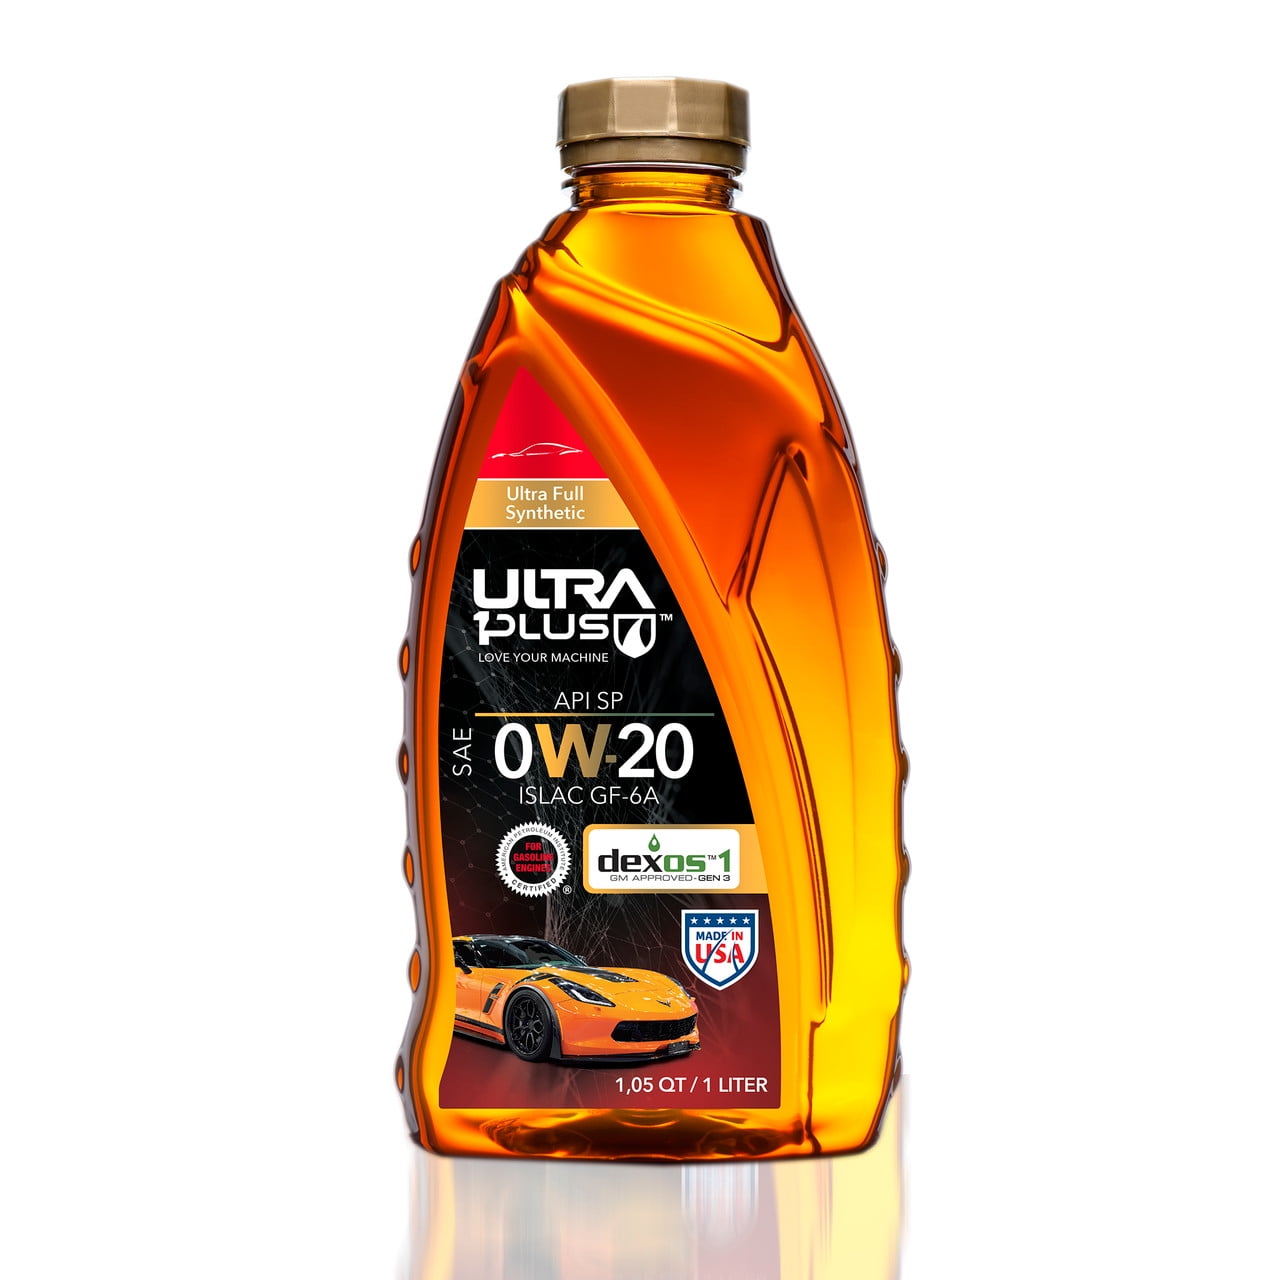 Ready-mix of cooling liquid G12evo - 1l, Operating liquids, Car cosmetics  & Liquids, For your car, Catalog